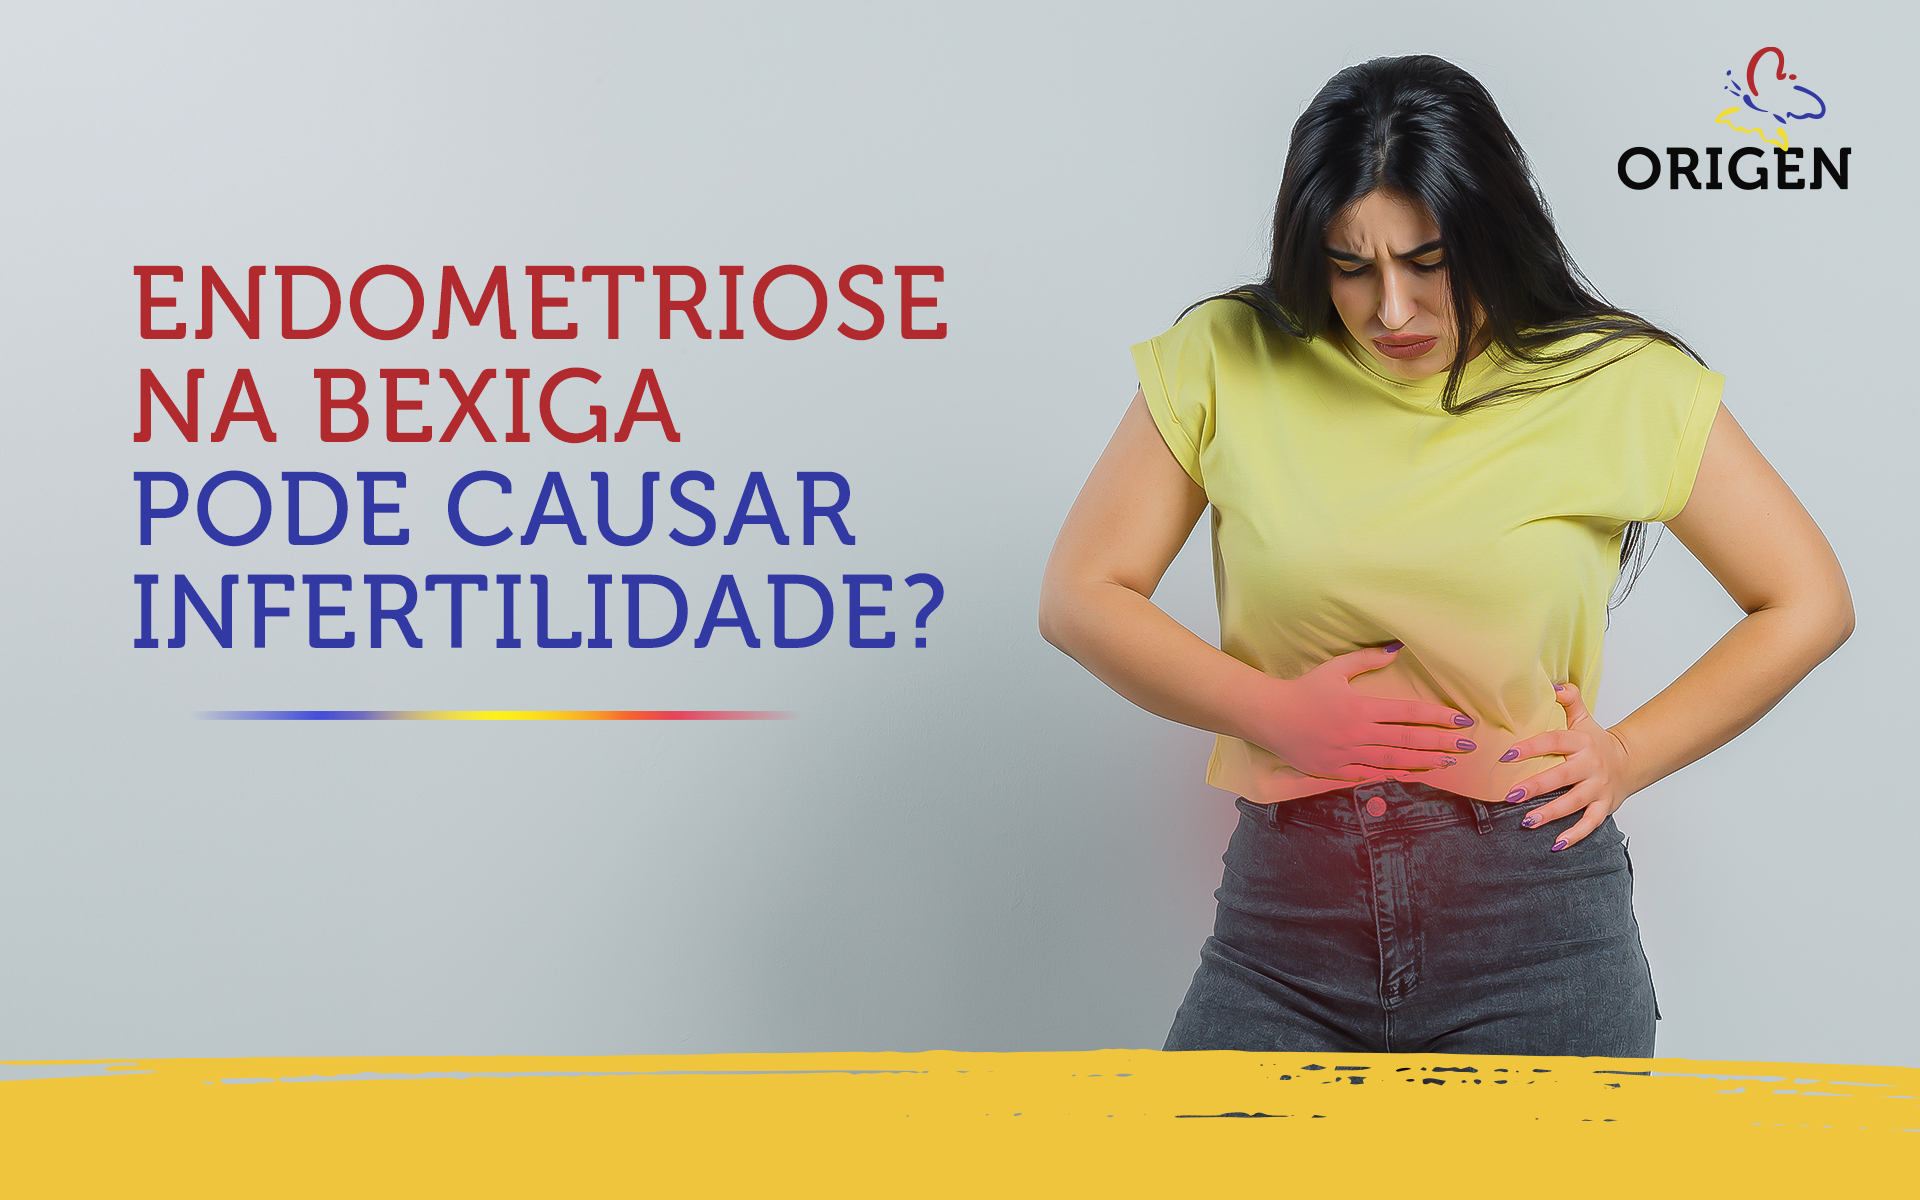 Endometriose na bexiga pode causar infertilidade?